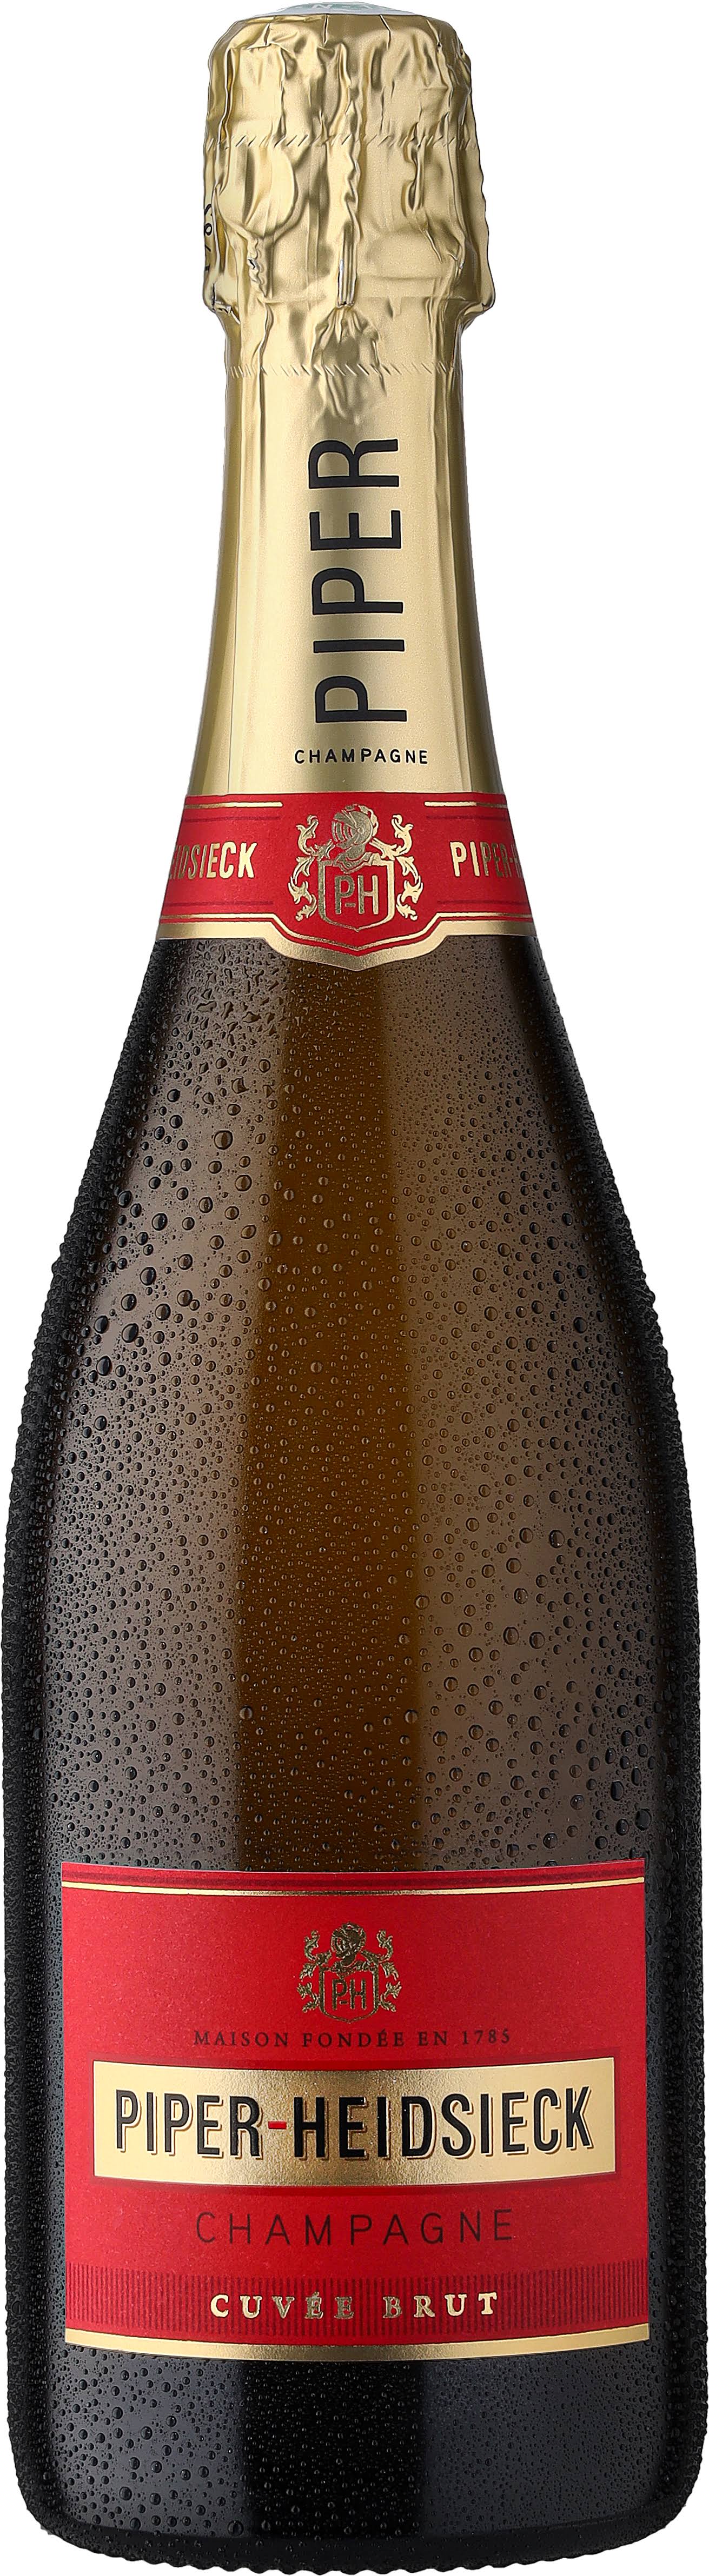 Piper Heidsieck Champagne Cuvée Brut - 750ml